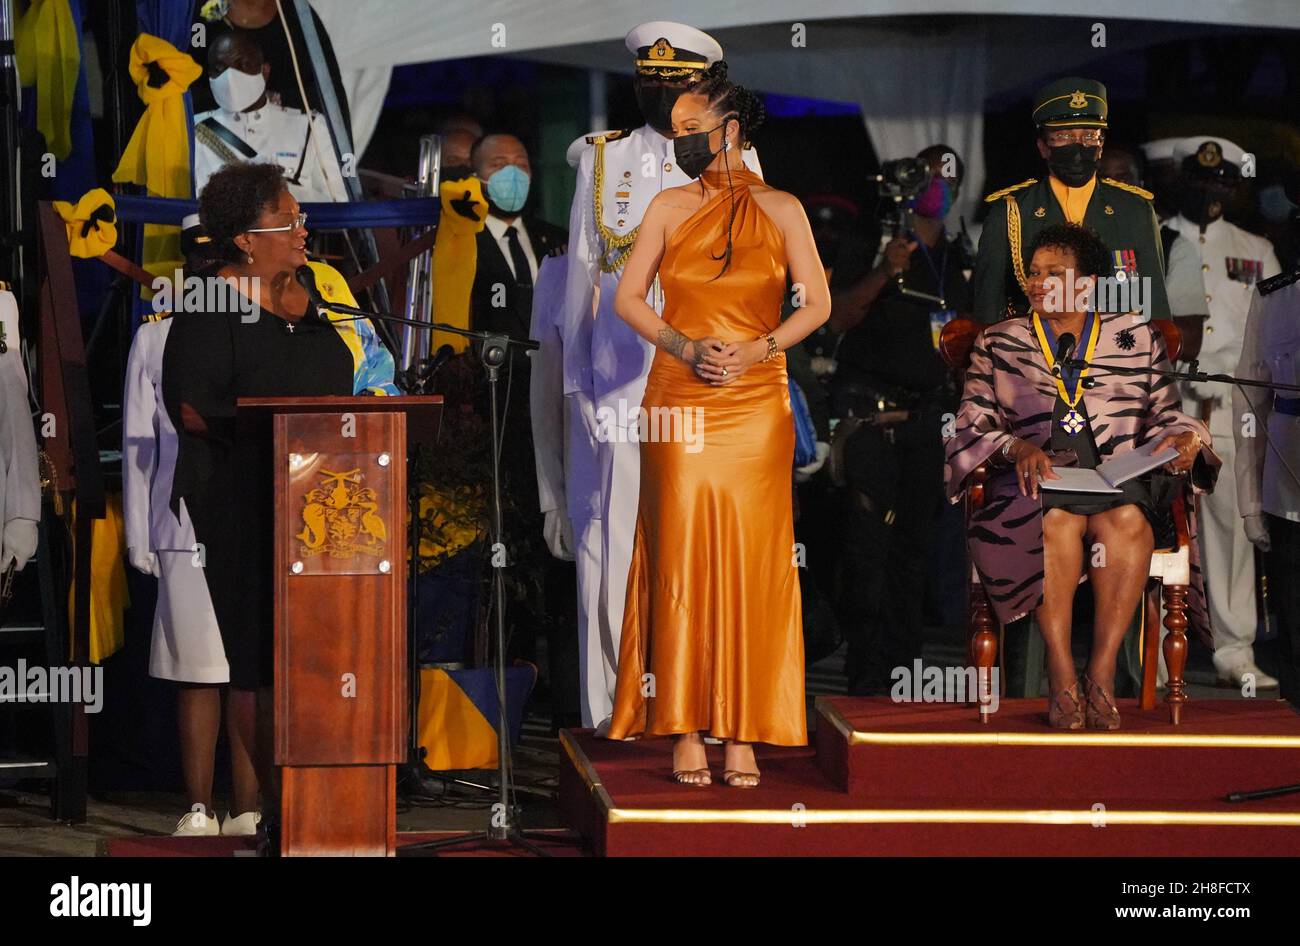 Rihanna (Mitte) nimmt an der Präsidentenzeremonie auf dem Heroes Square, Bridgetown, Barbados, Teil. Bilddatum: Dienstag, 30. November 2021. Stockfoto